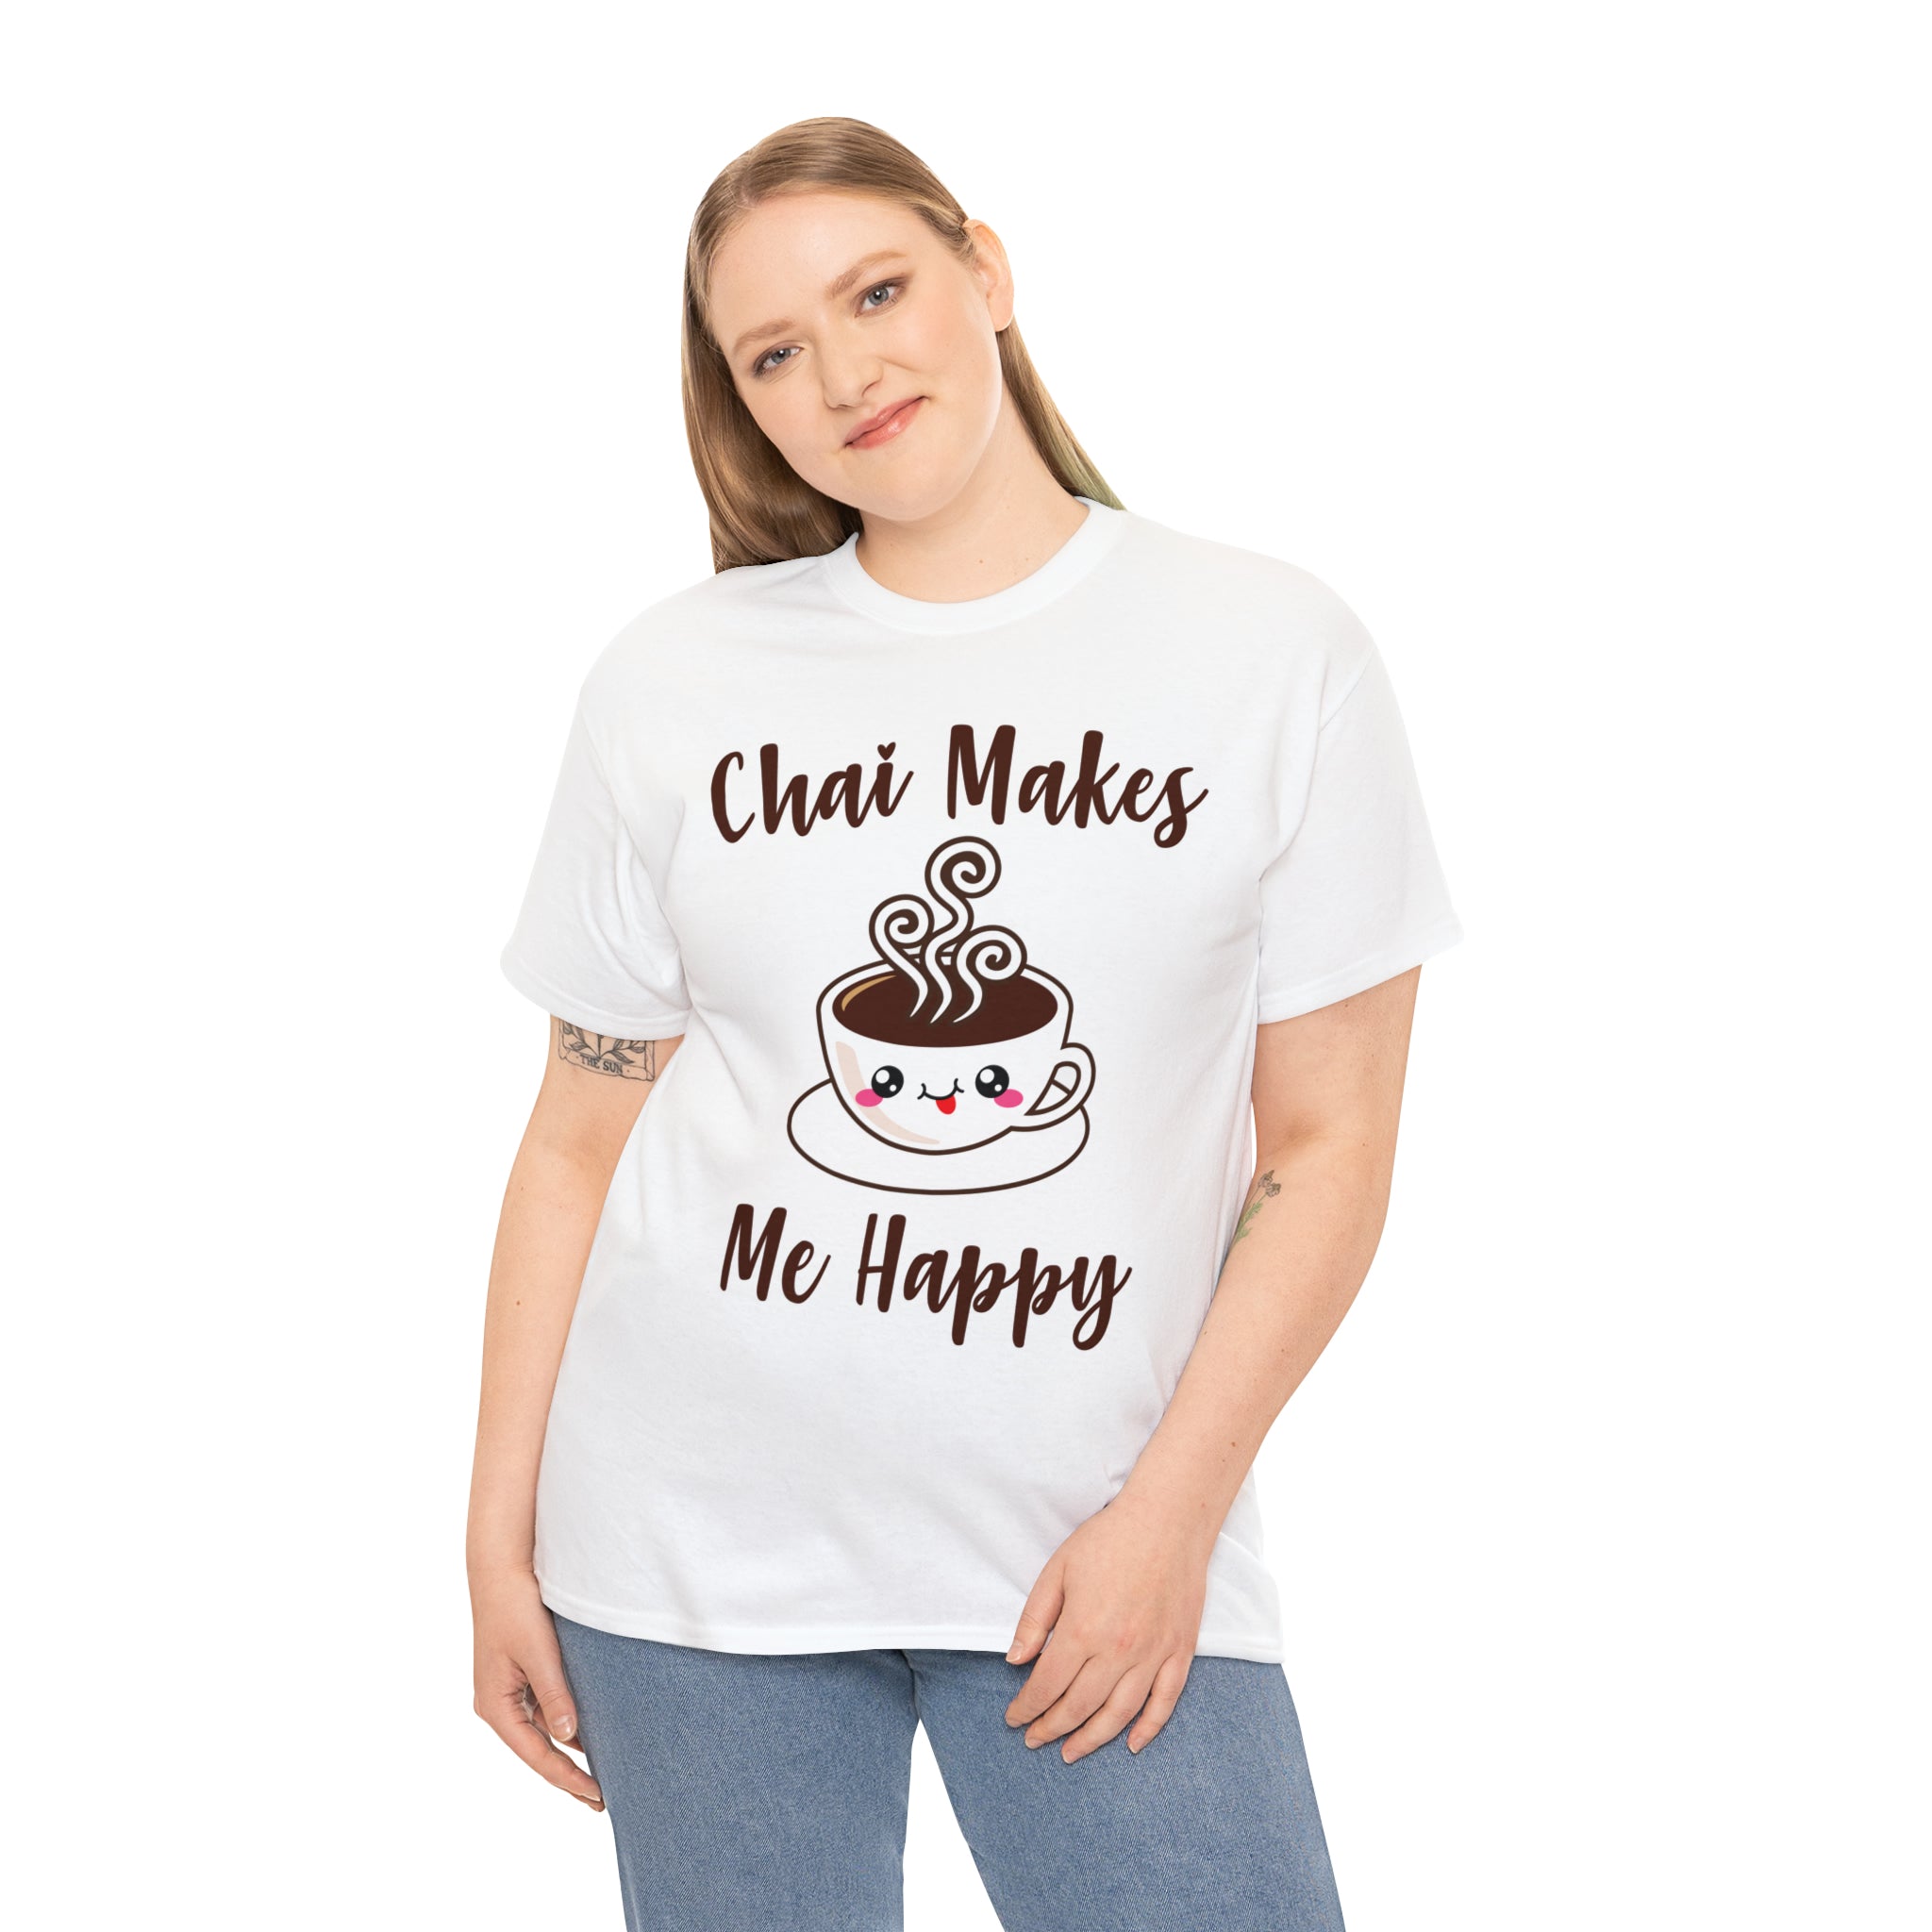 Chai Makes Me Happy T-Shirt Design by C&C